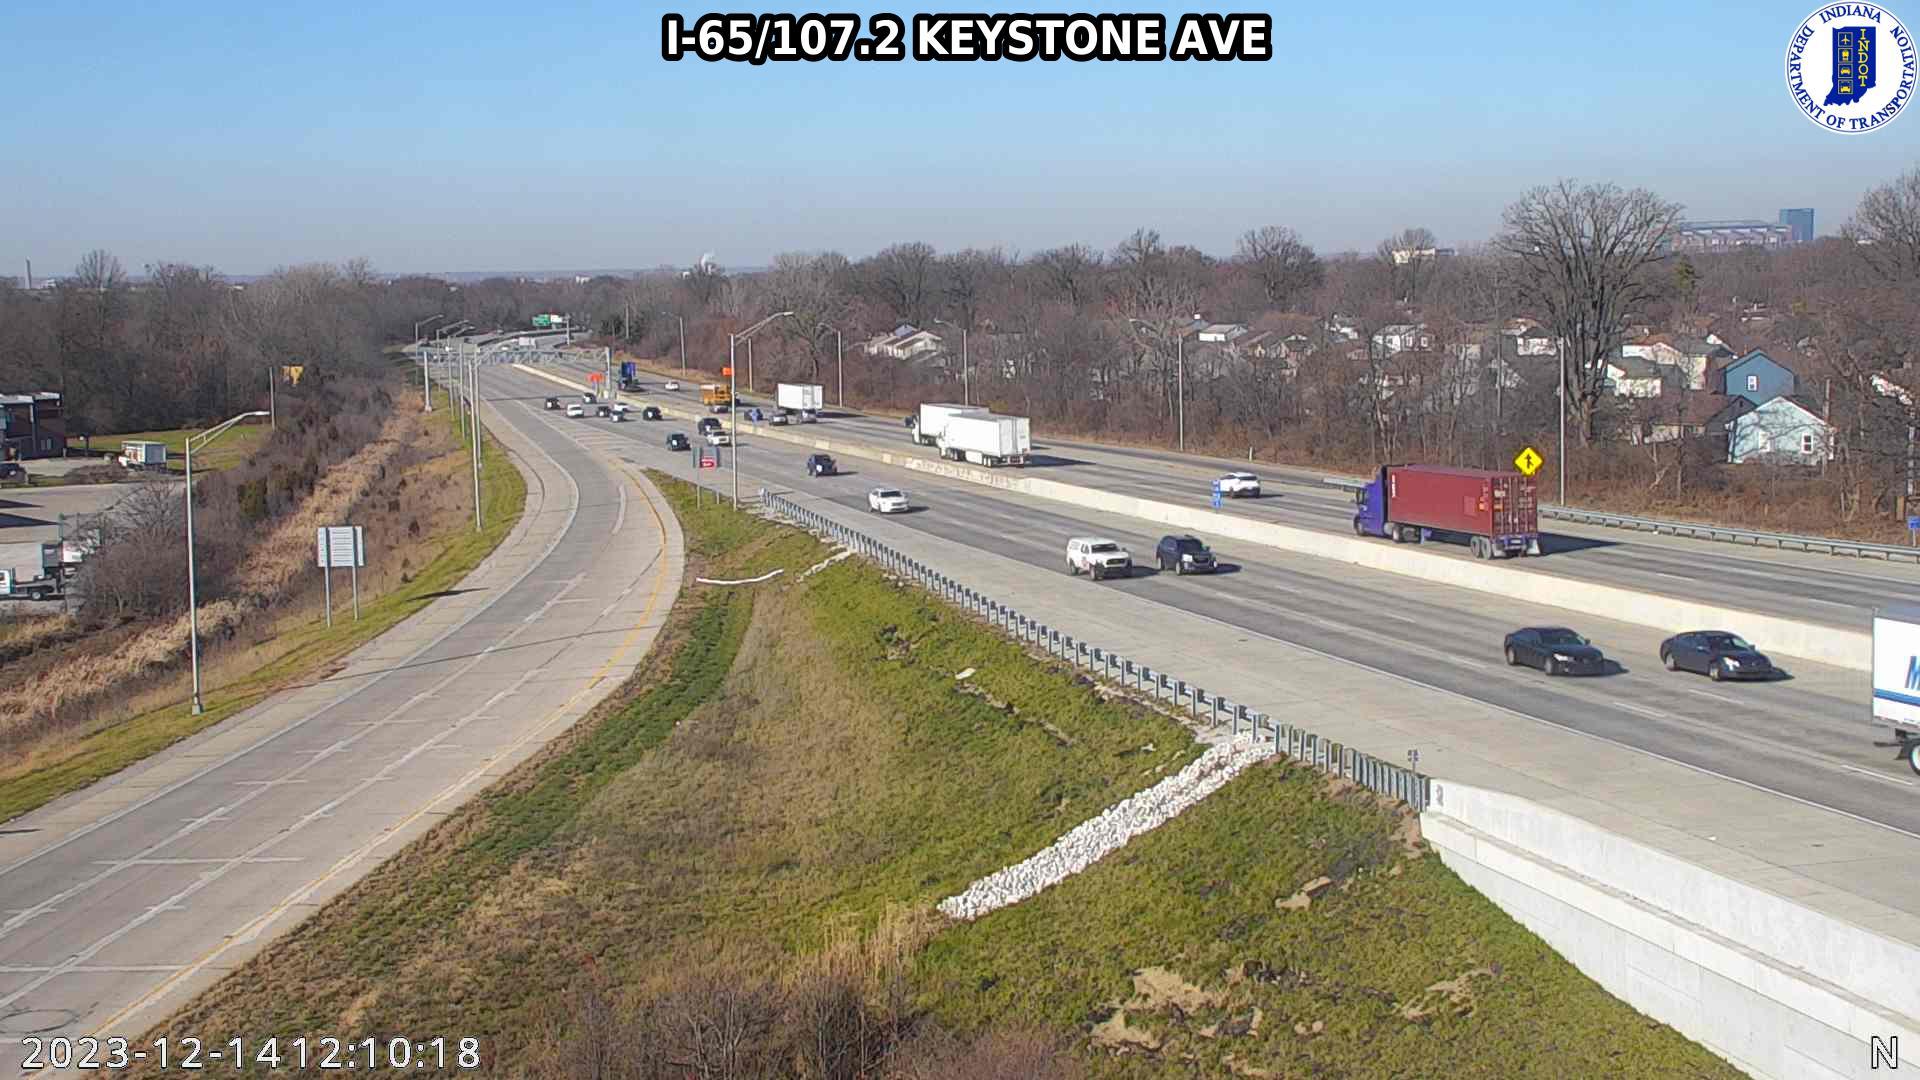 Traffic Cam Indianapolis: I-65: I-65/107.2 KEYSTONE AVE Player